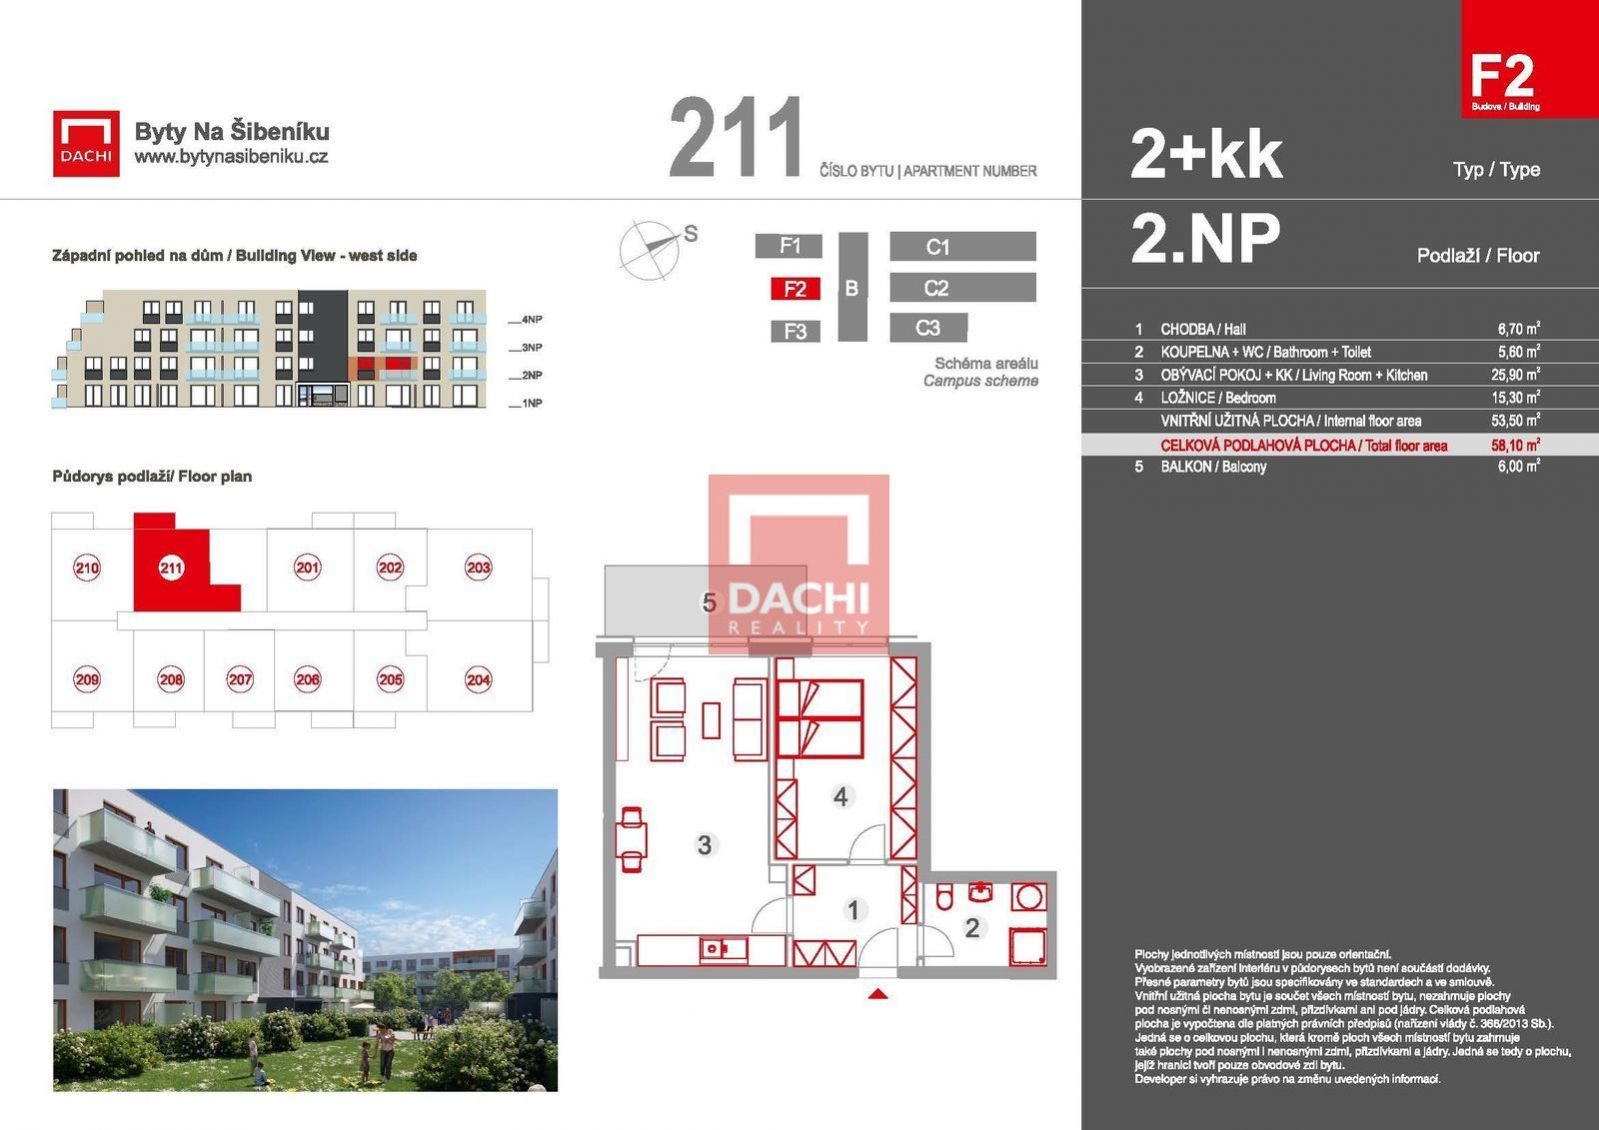 Prodej novostavby bytu F2. 211  2+kk 58,10 m s balkonem 6m, Olomouc, Byty Na Šibeníku II.etapa, obrázek č. 3